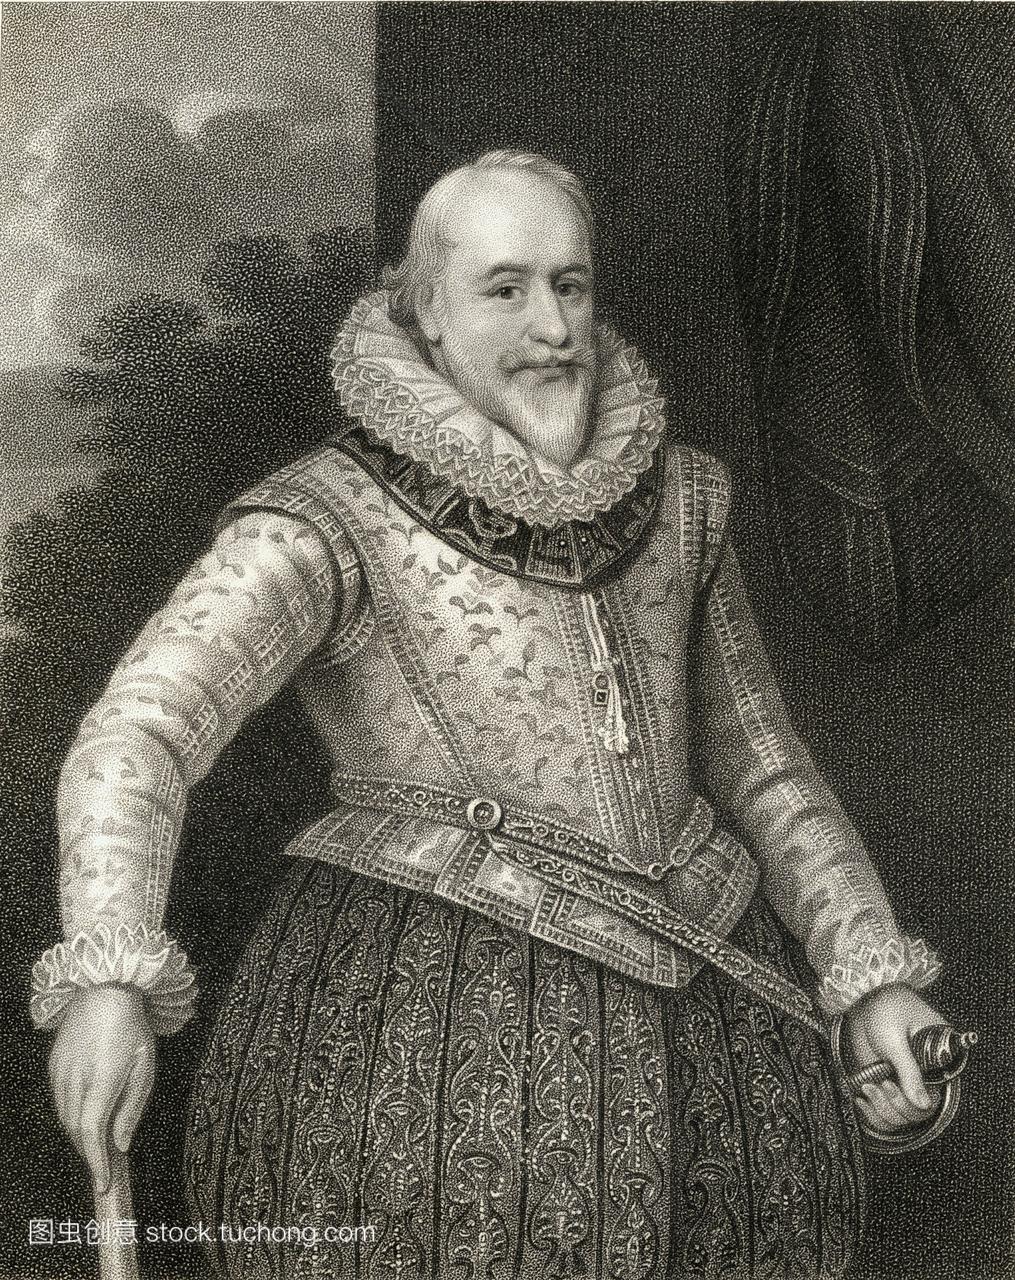 乔治·卡鲁伯爵,1555-1629。英国士兵和管理